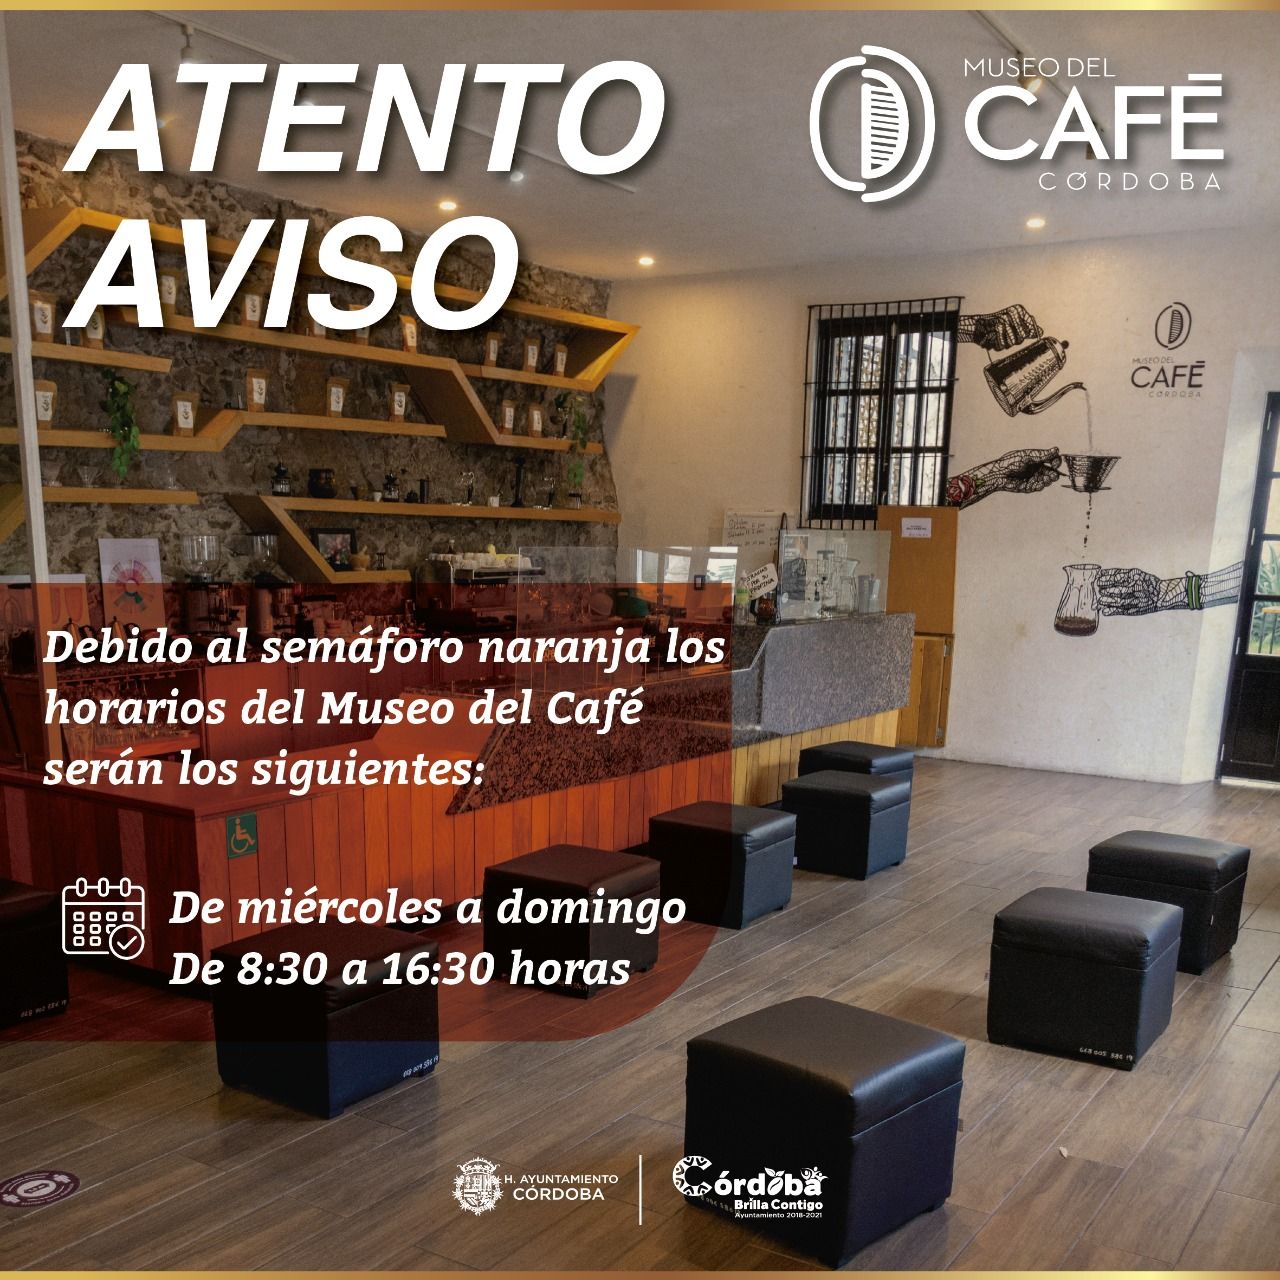 El Museo del Café de Córdoba brindará servicio en nuevo horario